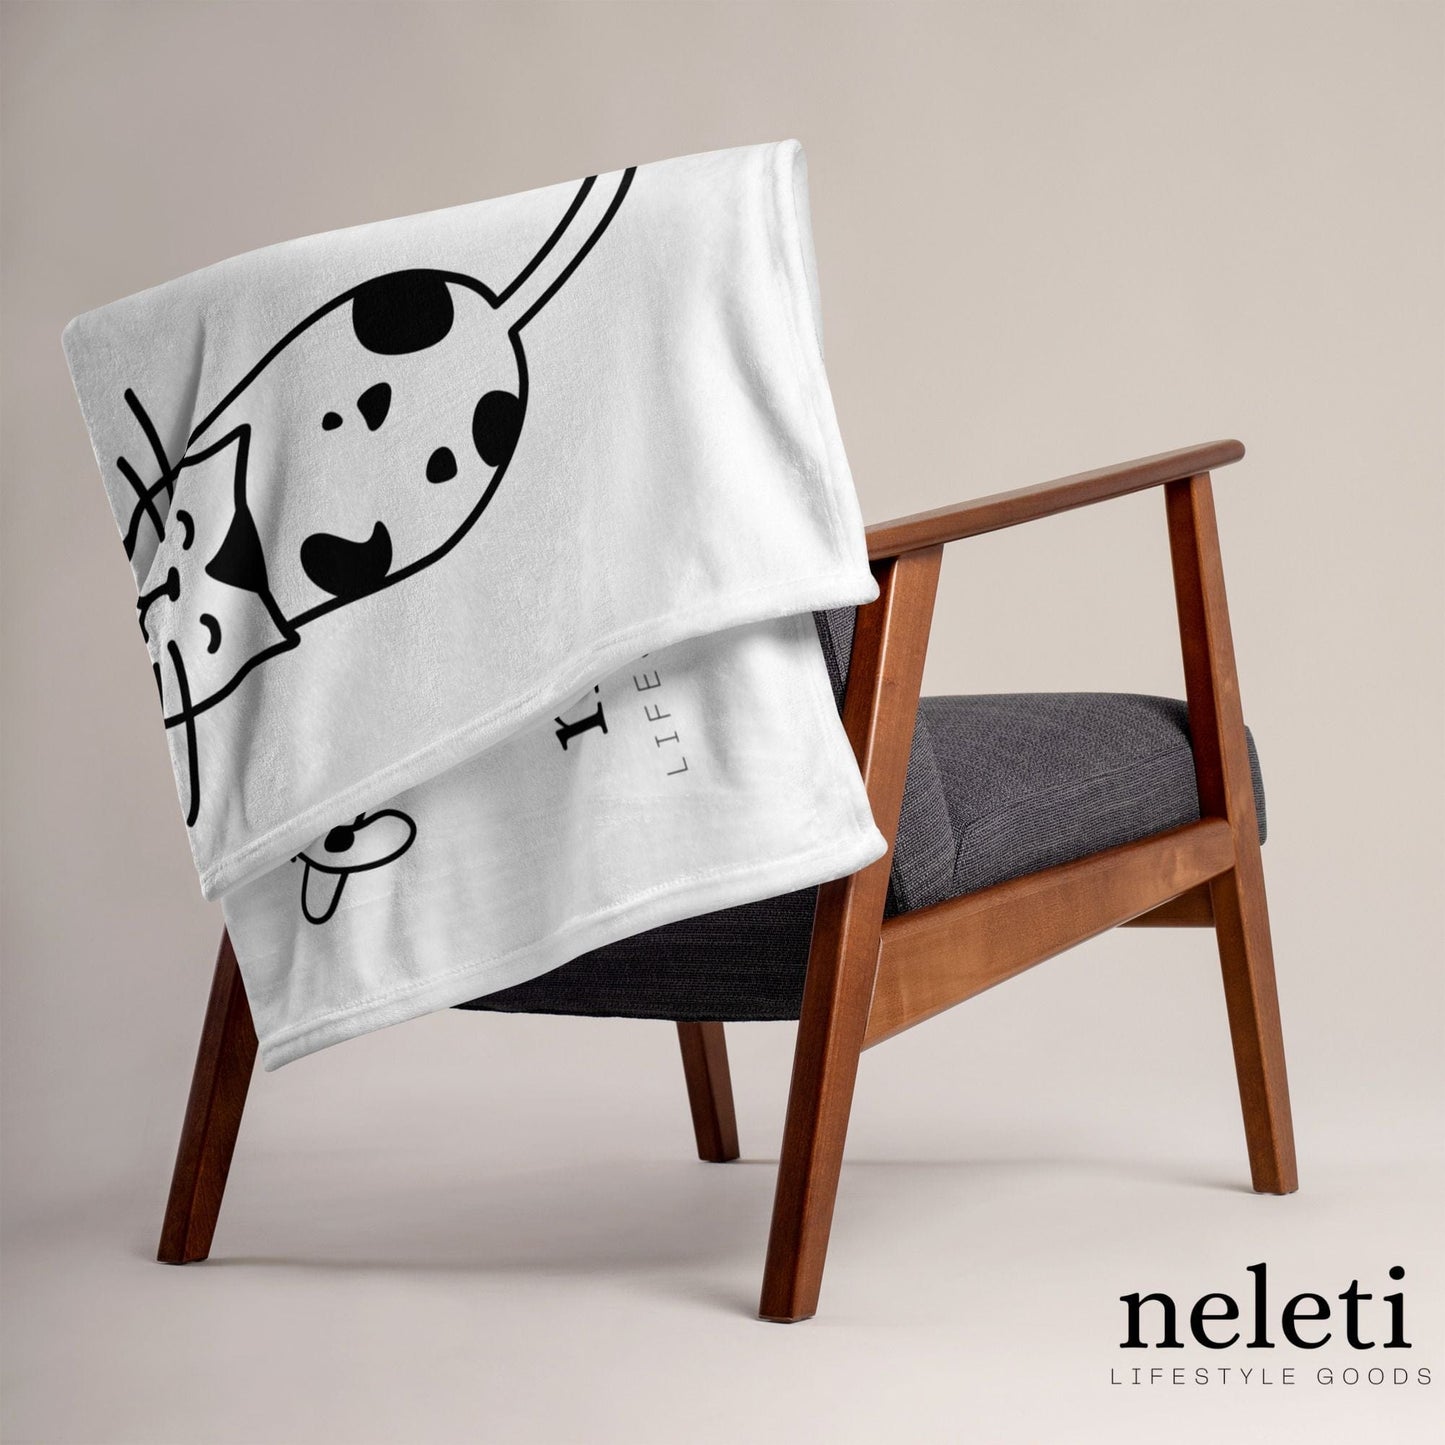    neleti.com-cat-blanket-in-white-color